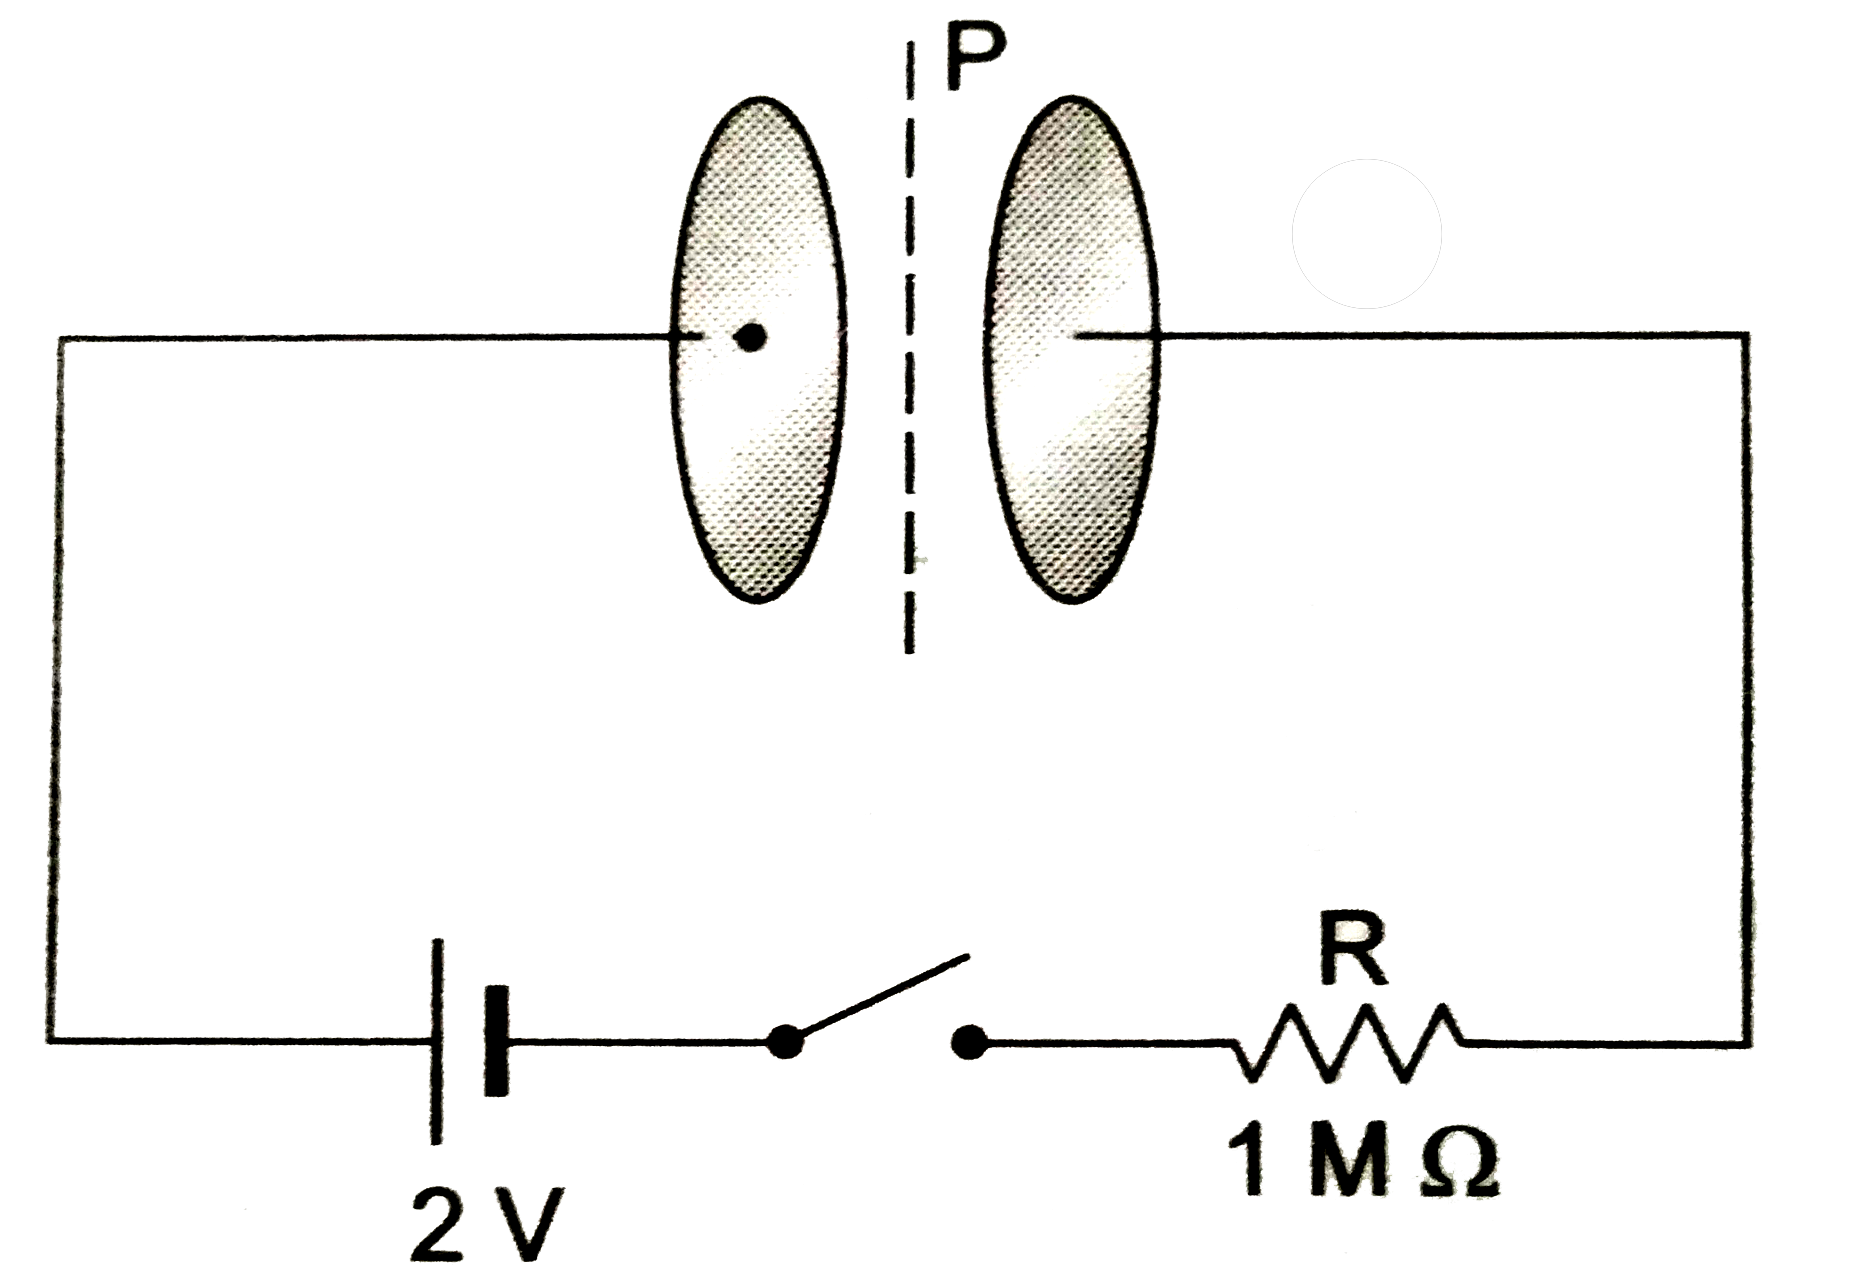 किसी समांतर प्लेट संधारित्र की वृत्ताकार प्लेटो की त्रिज्या 1 m तथा धारिता C=1nF है। इसे चित्र 1।9 के अनुसार 2 V की बैटरी तथा 1MOmega के एक प्रतिरोधक के साथ श्रेणीक्रम में जोड़ा गया है। आवेशित करने के लिए सलंगन स्विच को समय t = 0 पर बंद किया जाता है समय t=1ms पर संधारित्र के बीच में दोनों प्लेटो के केंद एव उसकी परिमिति के ठीक माध्य में स्थति बिंदु P पर चुंबकीय क्षेत्र का मान ज्ञात करे। मान ले कि आवेशन के क्रम संधारित्र पर आवेश का तात्कालिक मान है- q(t)CV(1-e^((t)/(CR)))